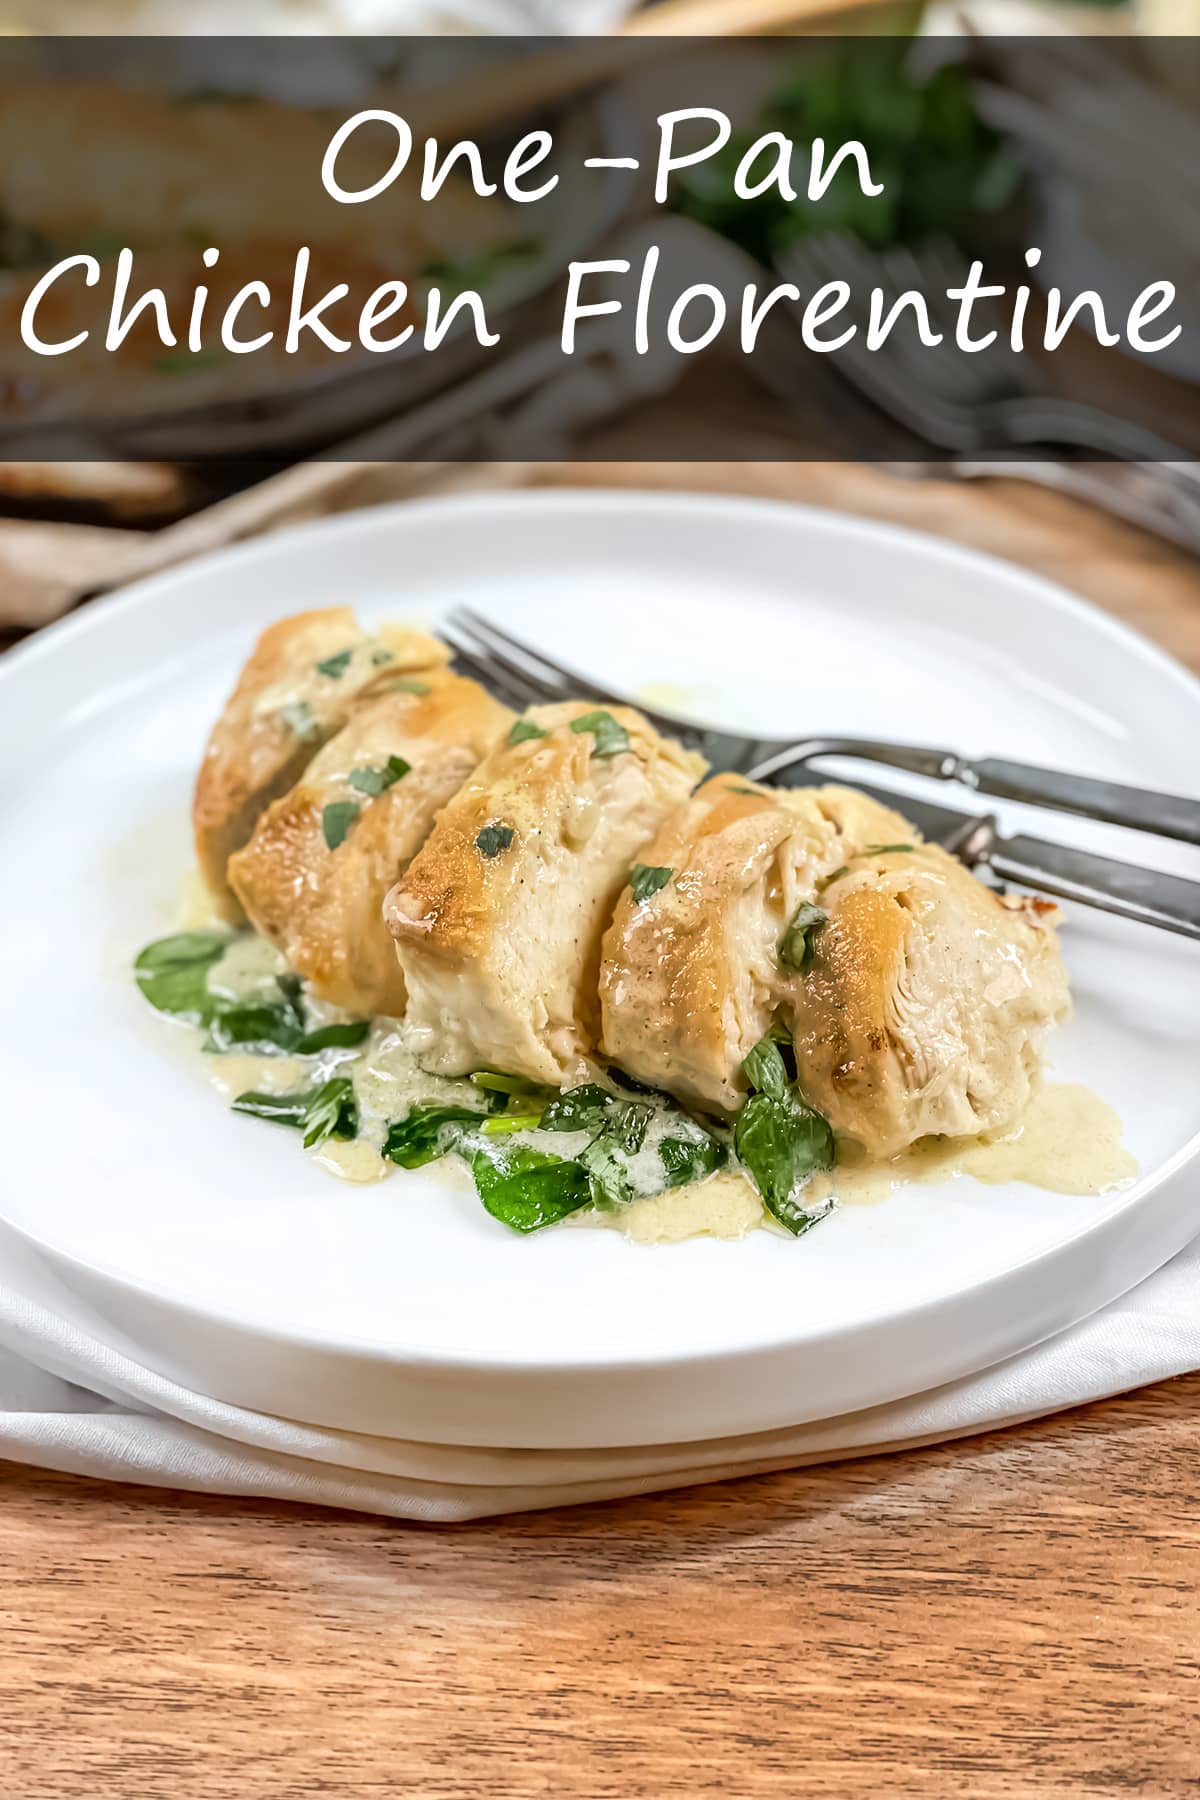 One-Pan Chicken Florentine